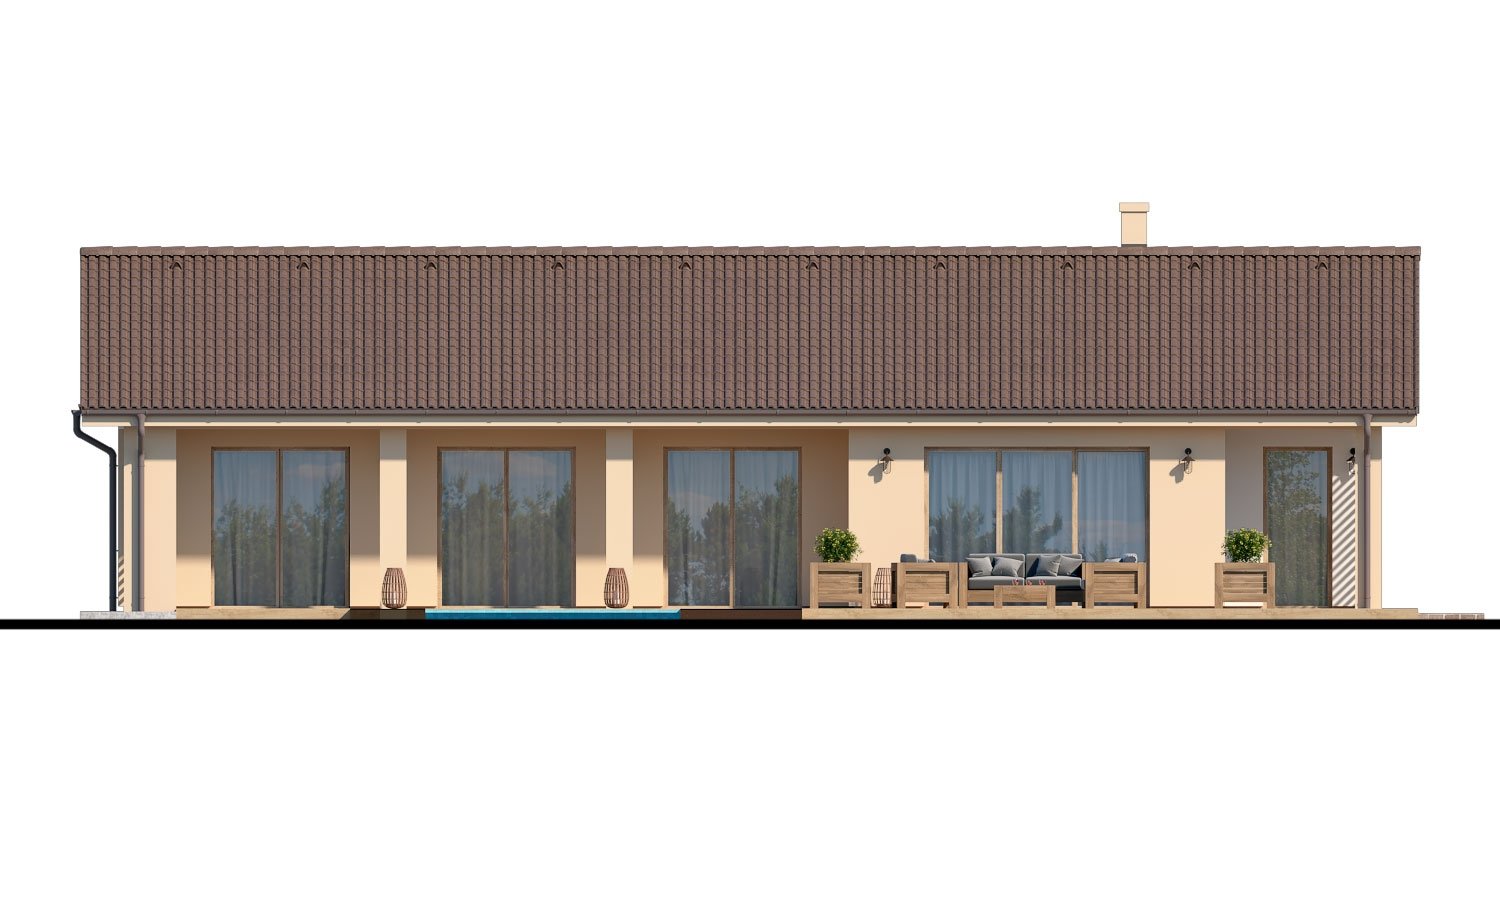 Zrkadlový pohľad 3. - Velký 4-pokojový bungalov s dvougaráží a terasou, přístupnou se všech obytných místností.